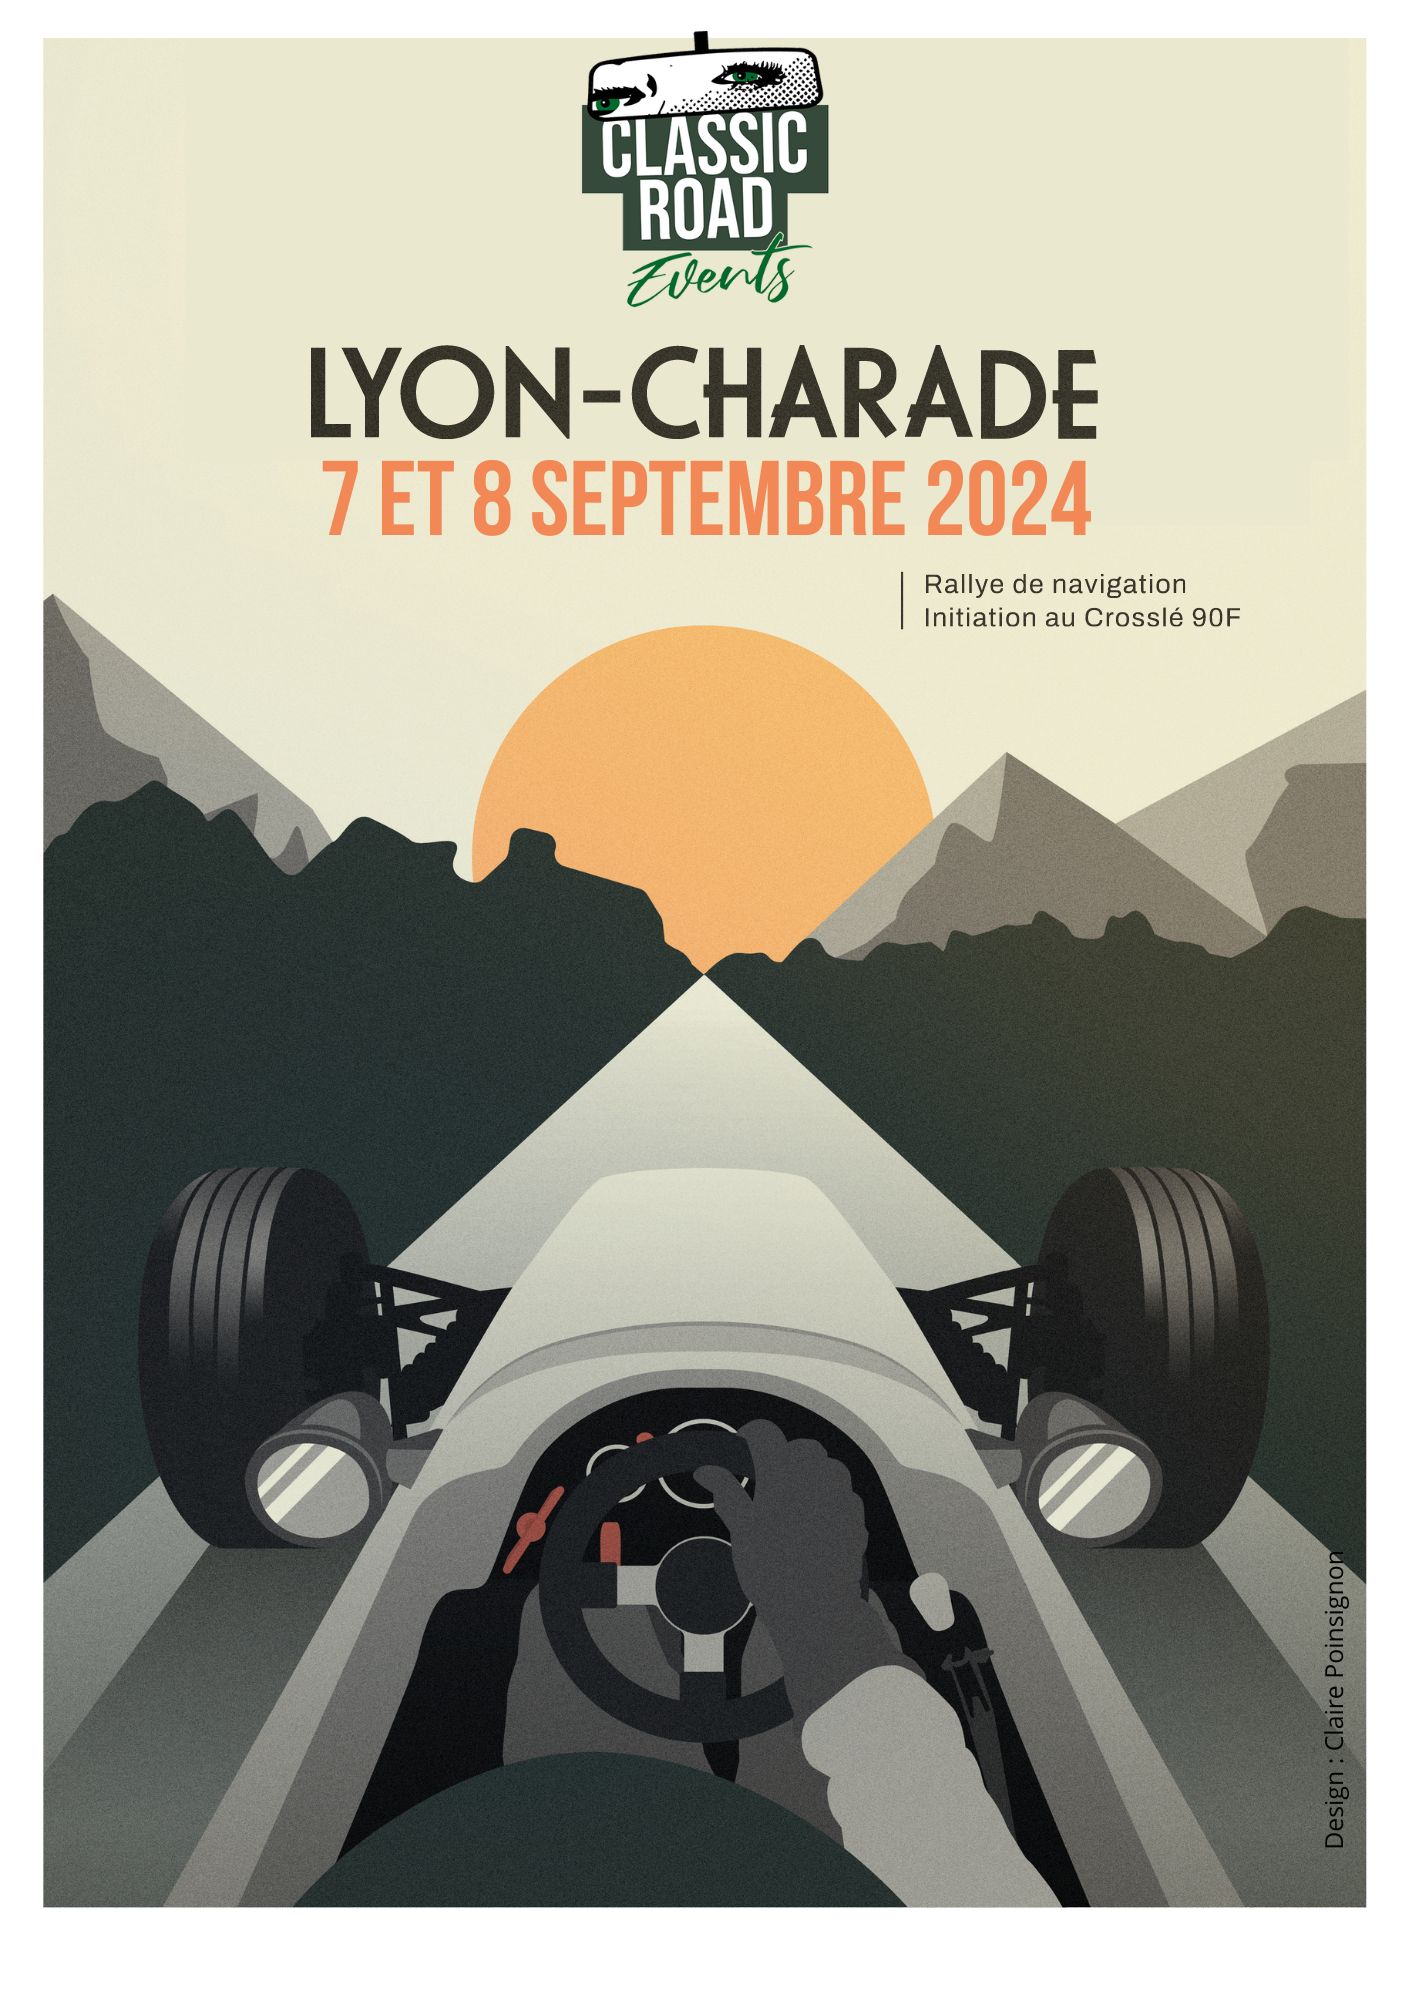 Classic Road Events - Salon Epoqu'auto de Lyon - Porsche